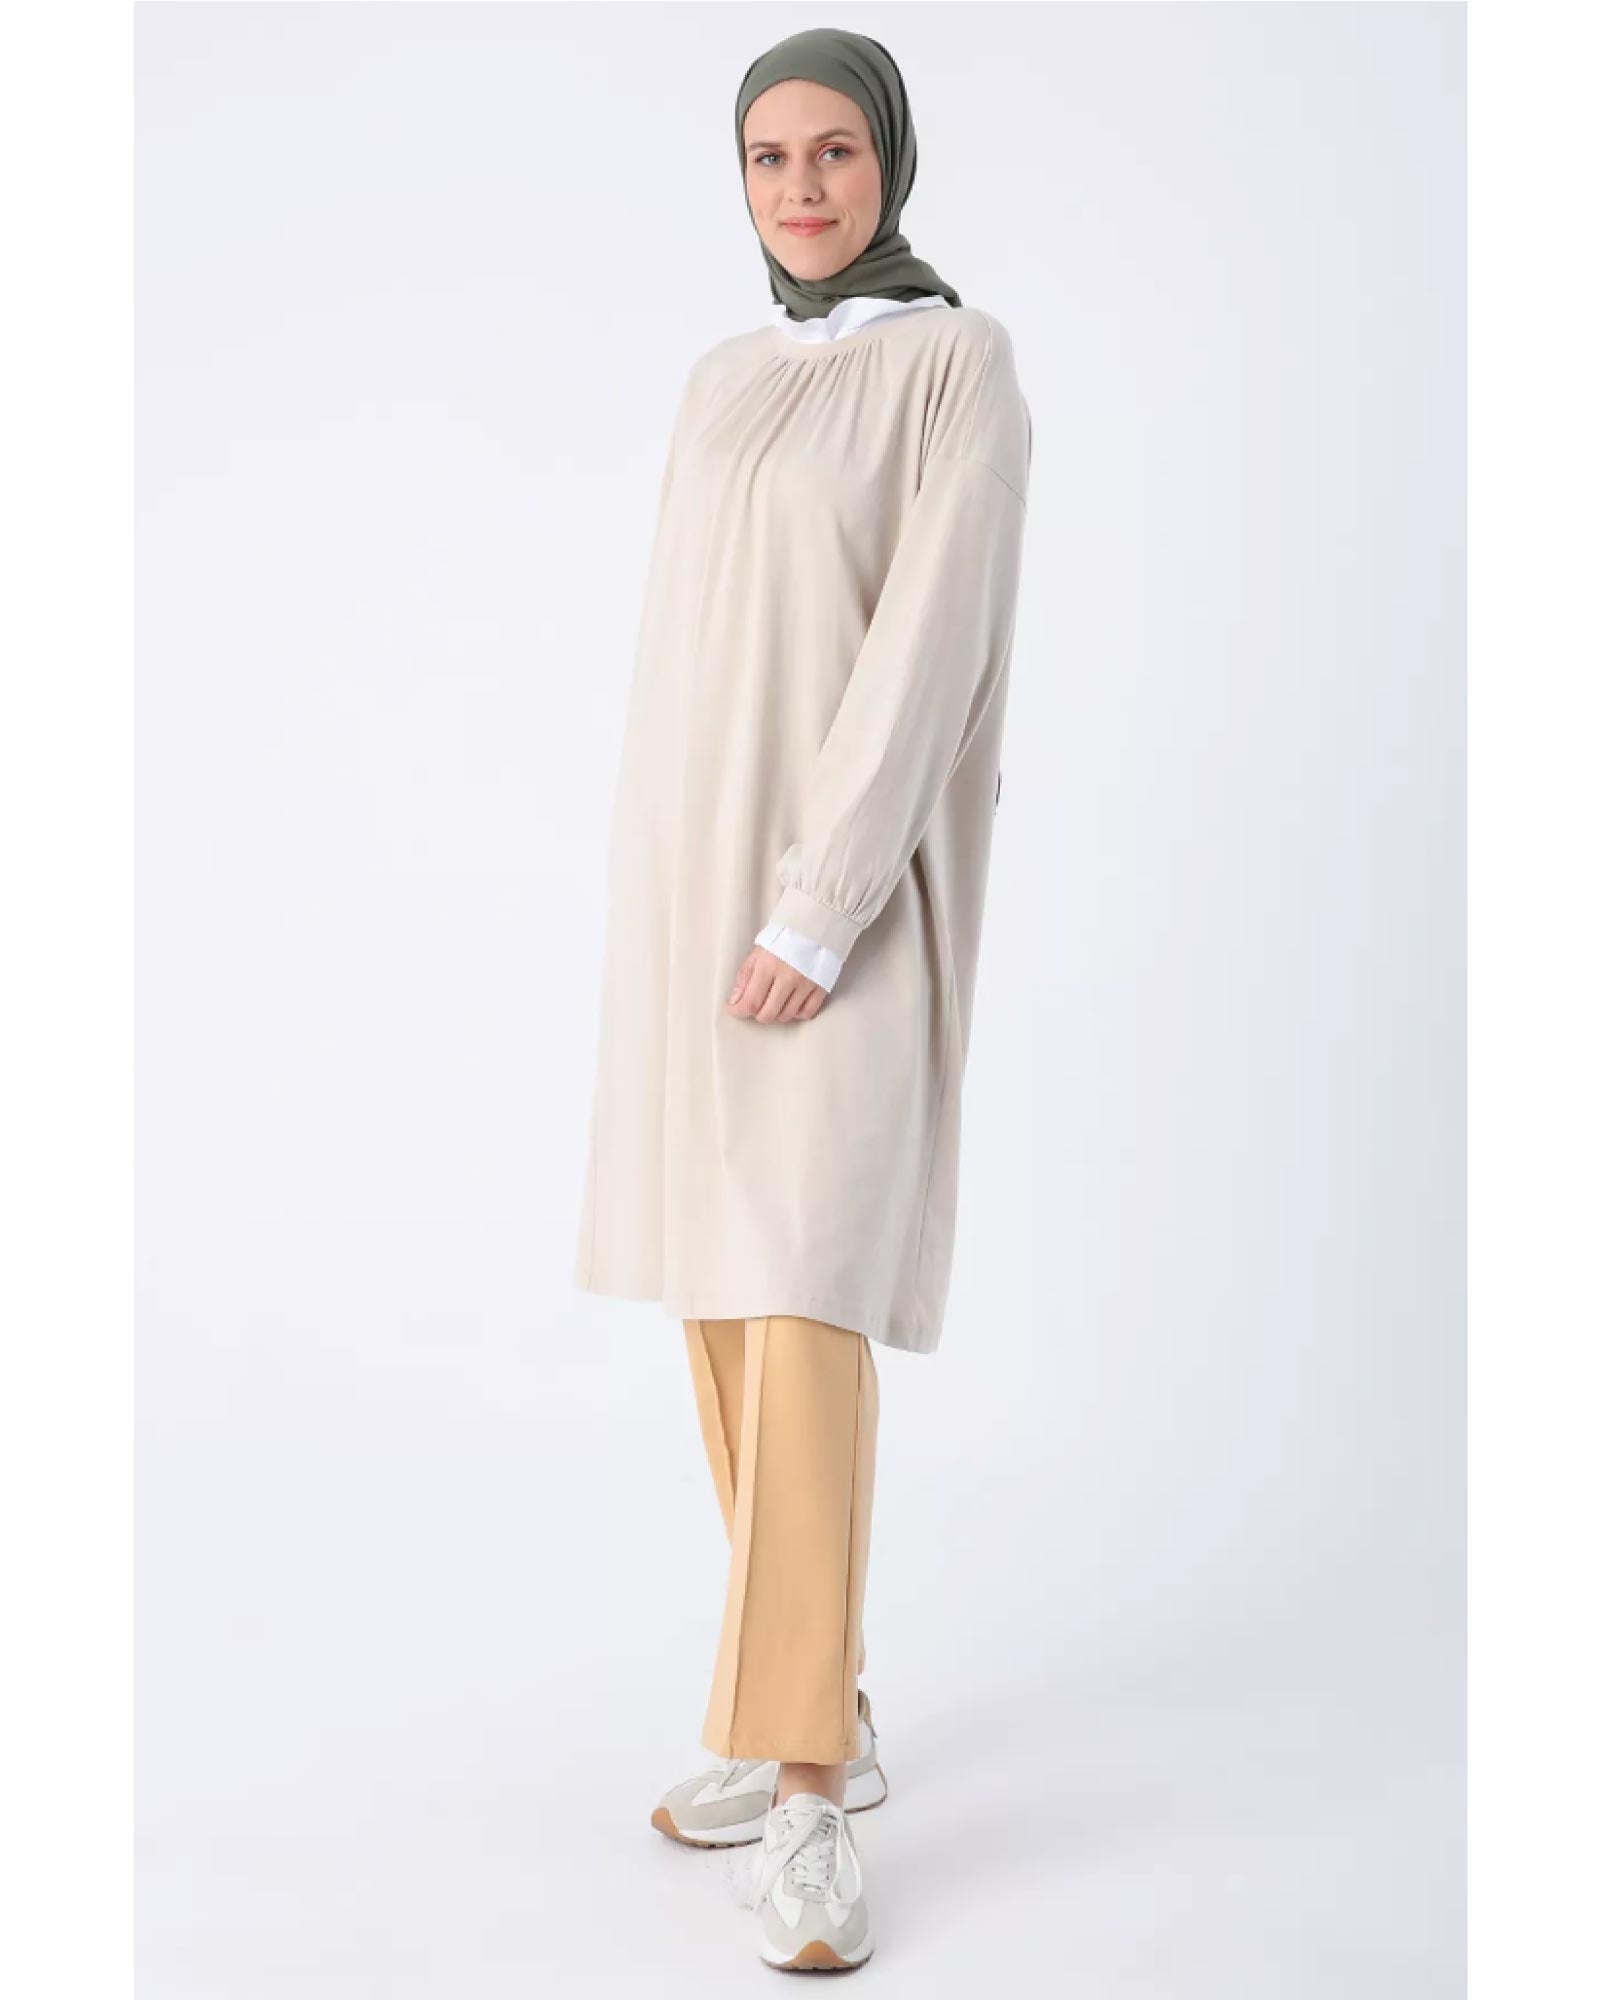 Hijab- Die Baumwoll-Tunika mit gerüschten Details und einem aufrecht stehenden Kragen